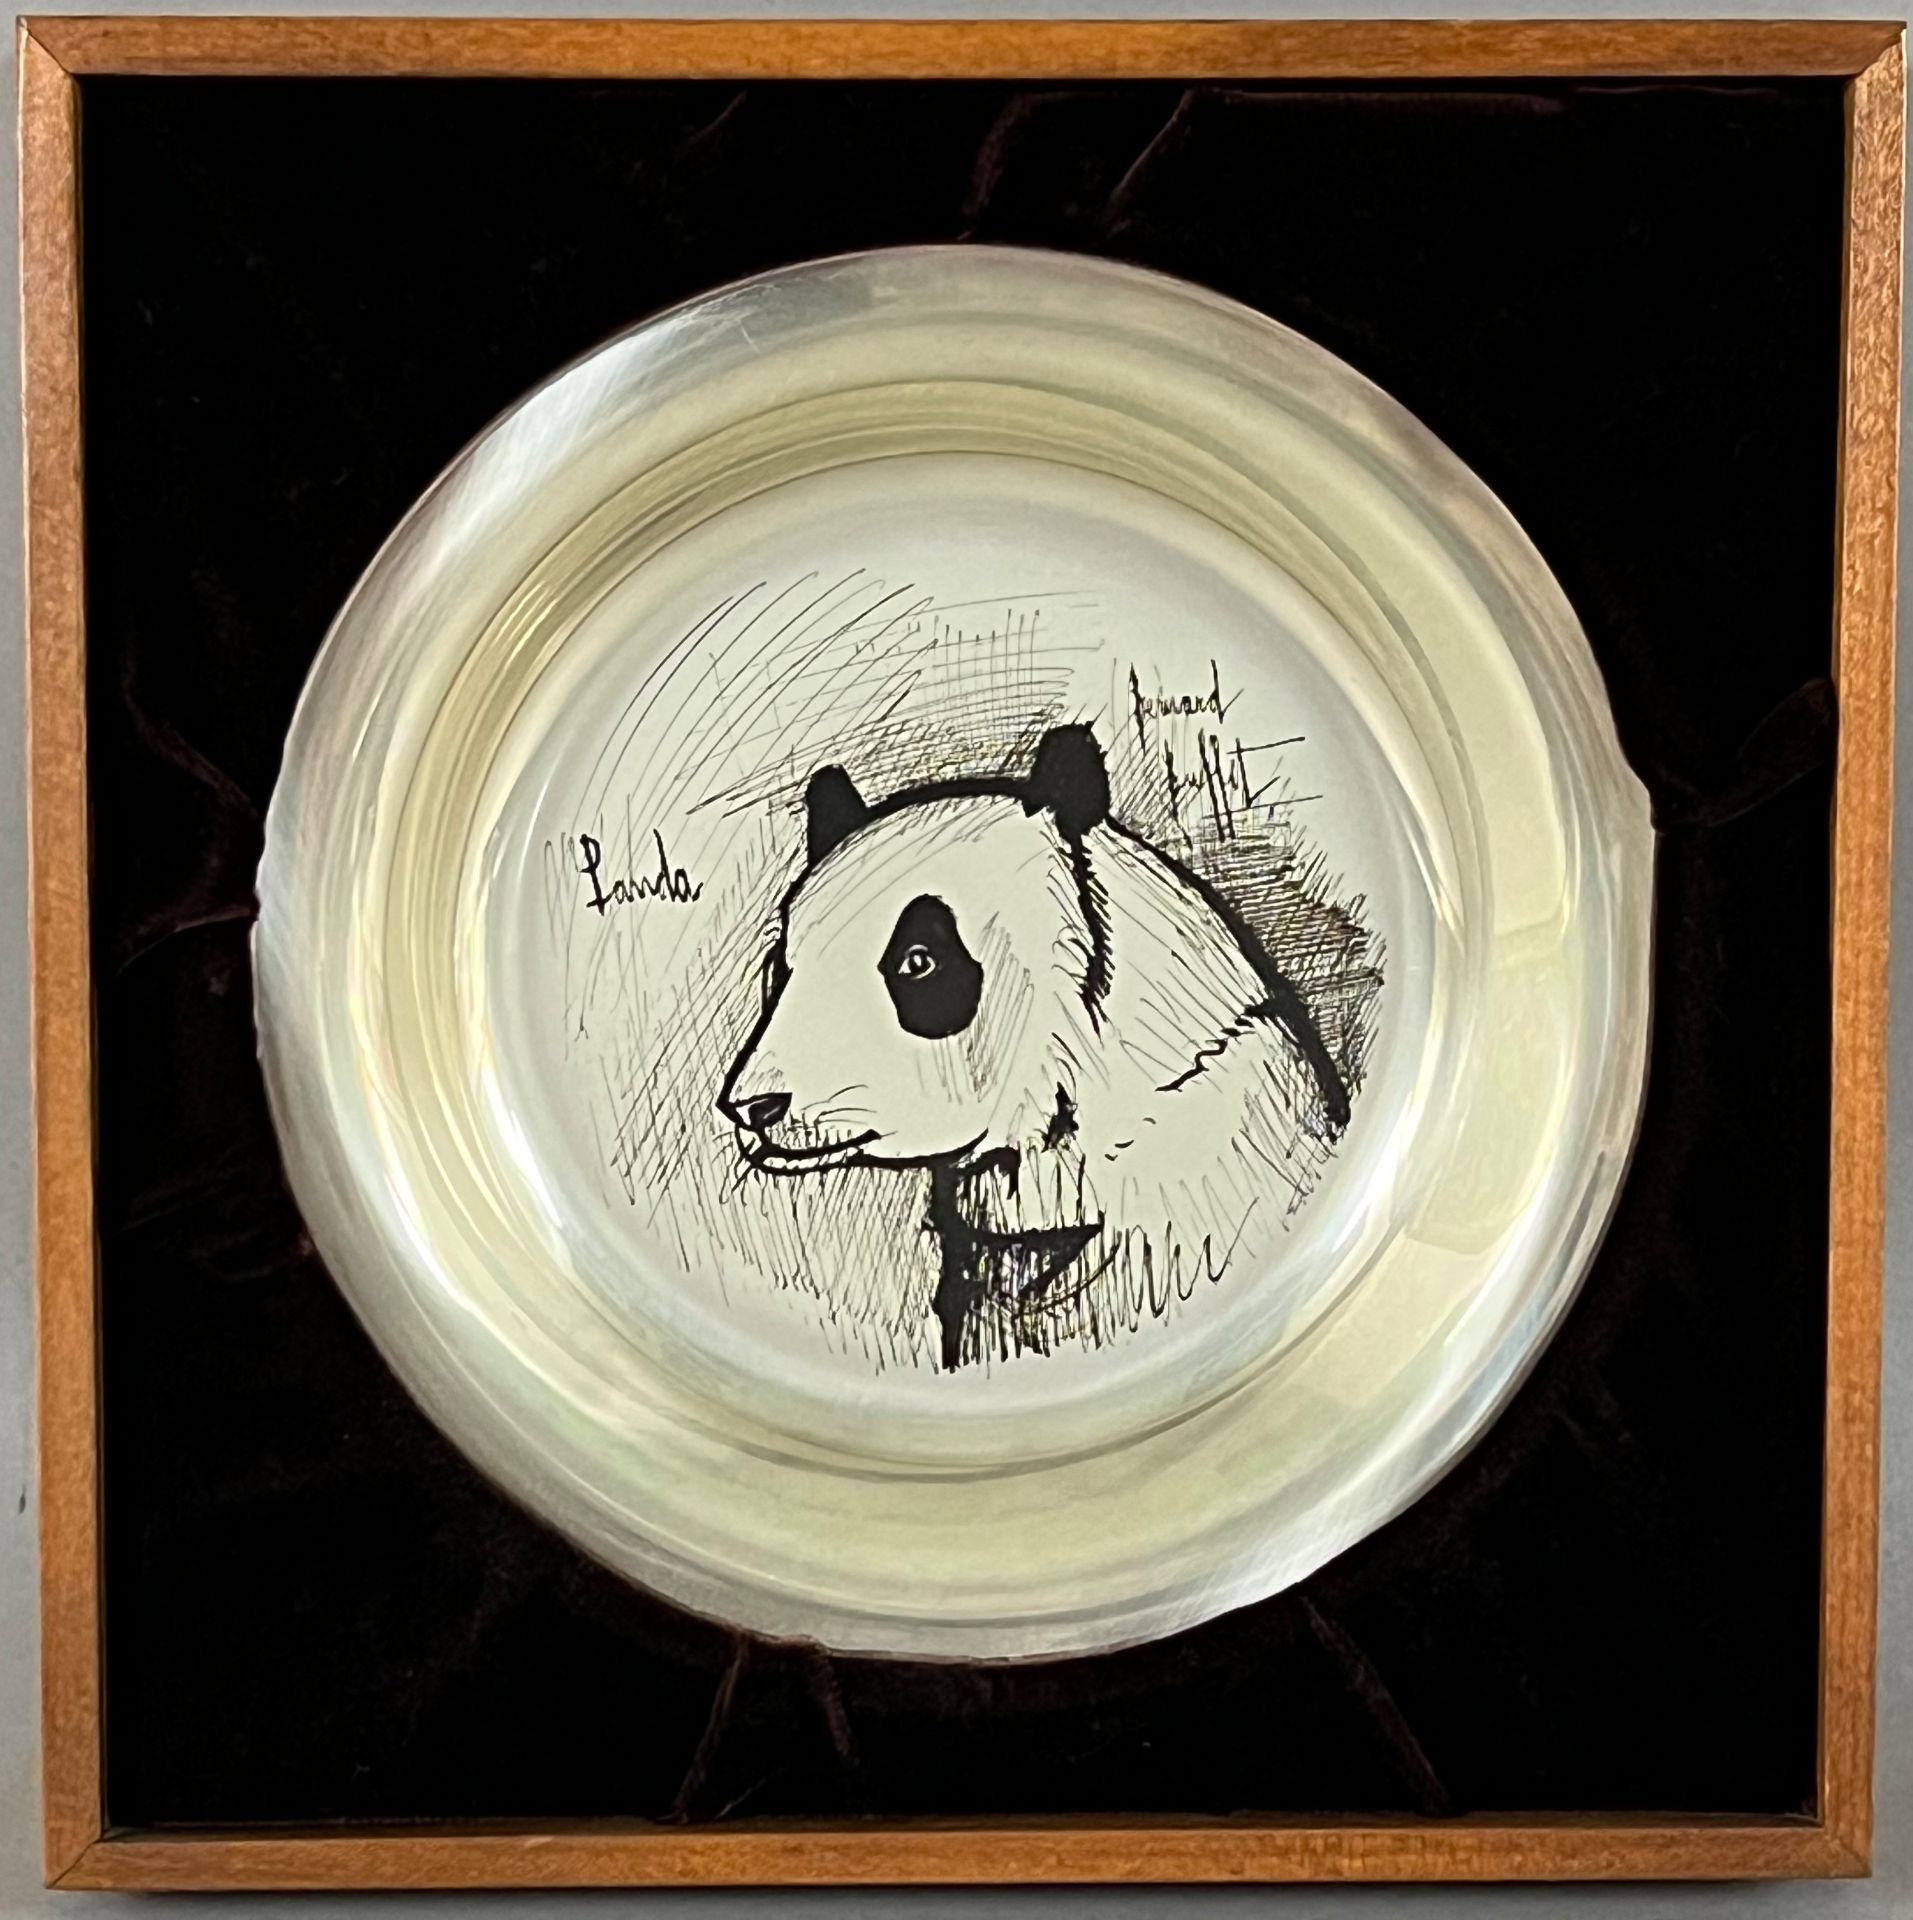 Bernard BUFFET (1928 - 1999). Artist's plate of 925 silver. "Panda". 1974. - Image 3 of 5